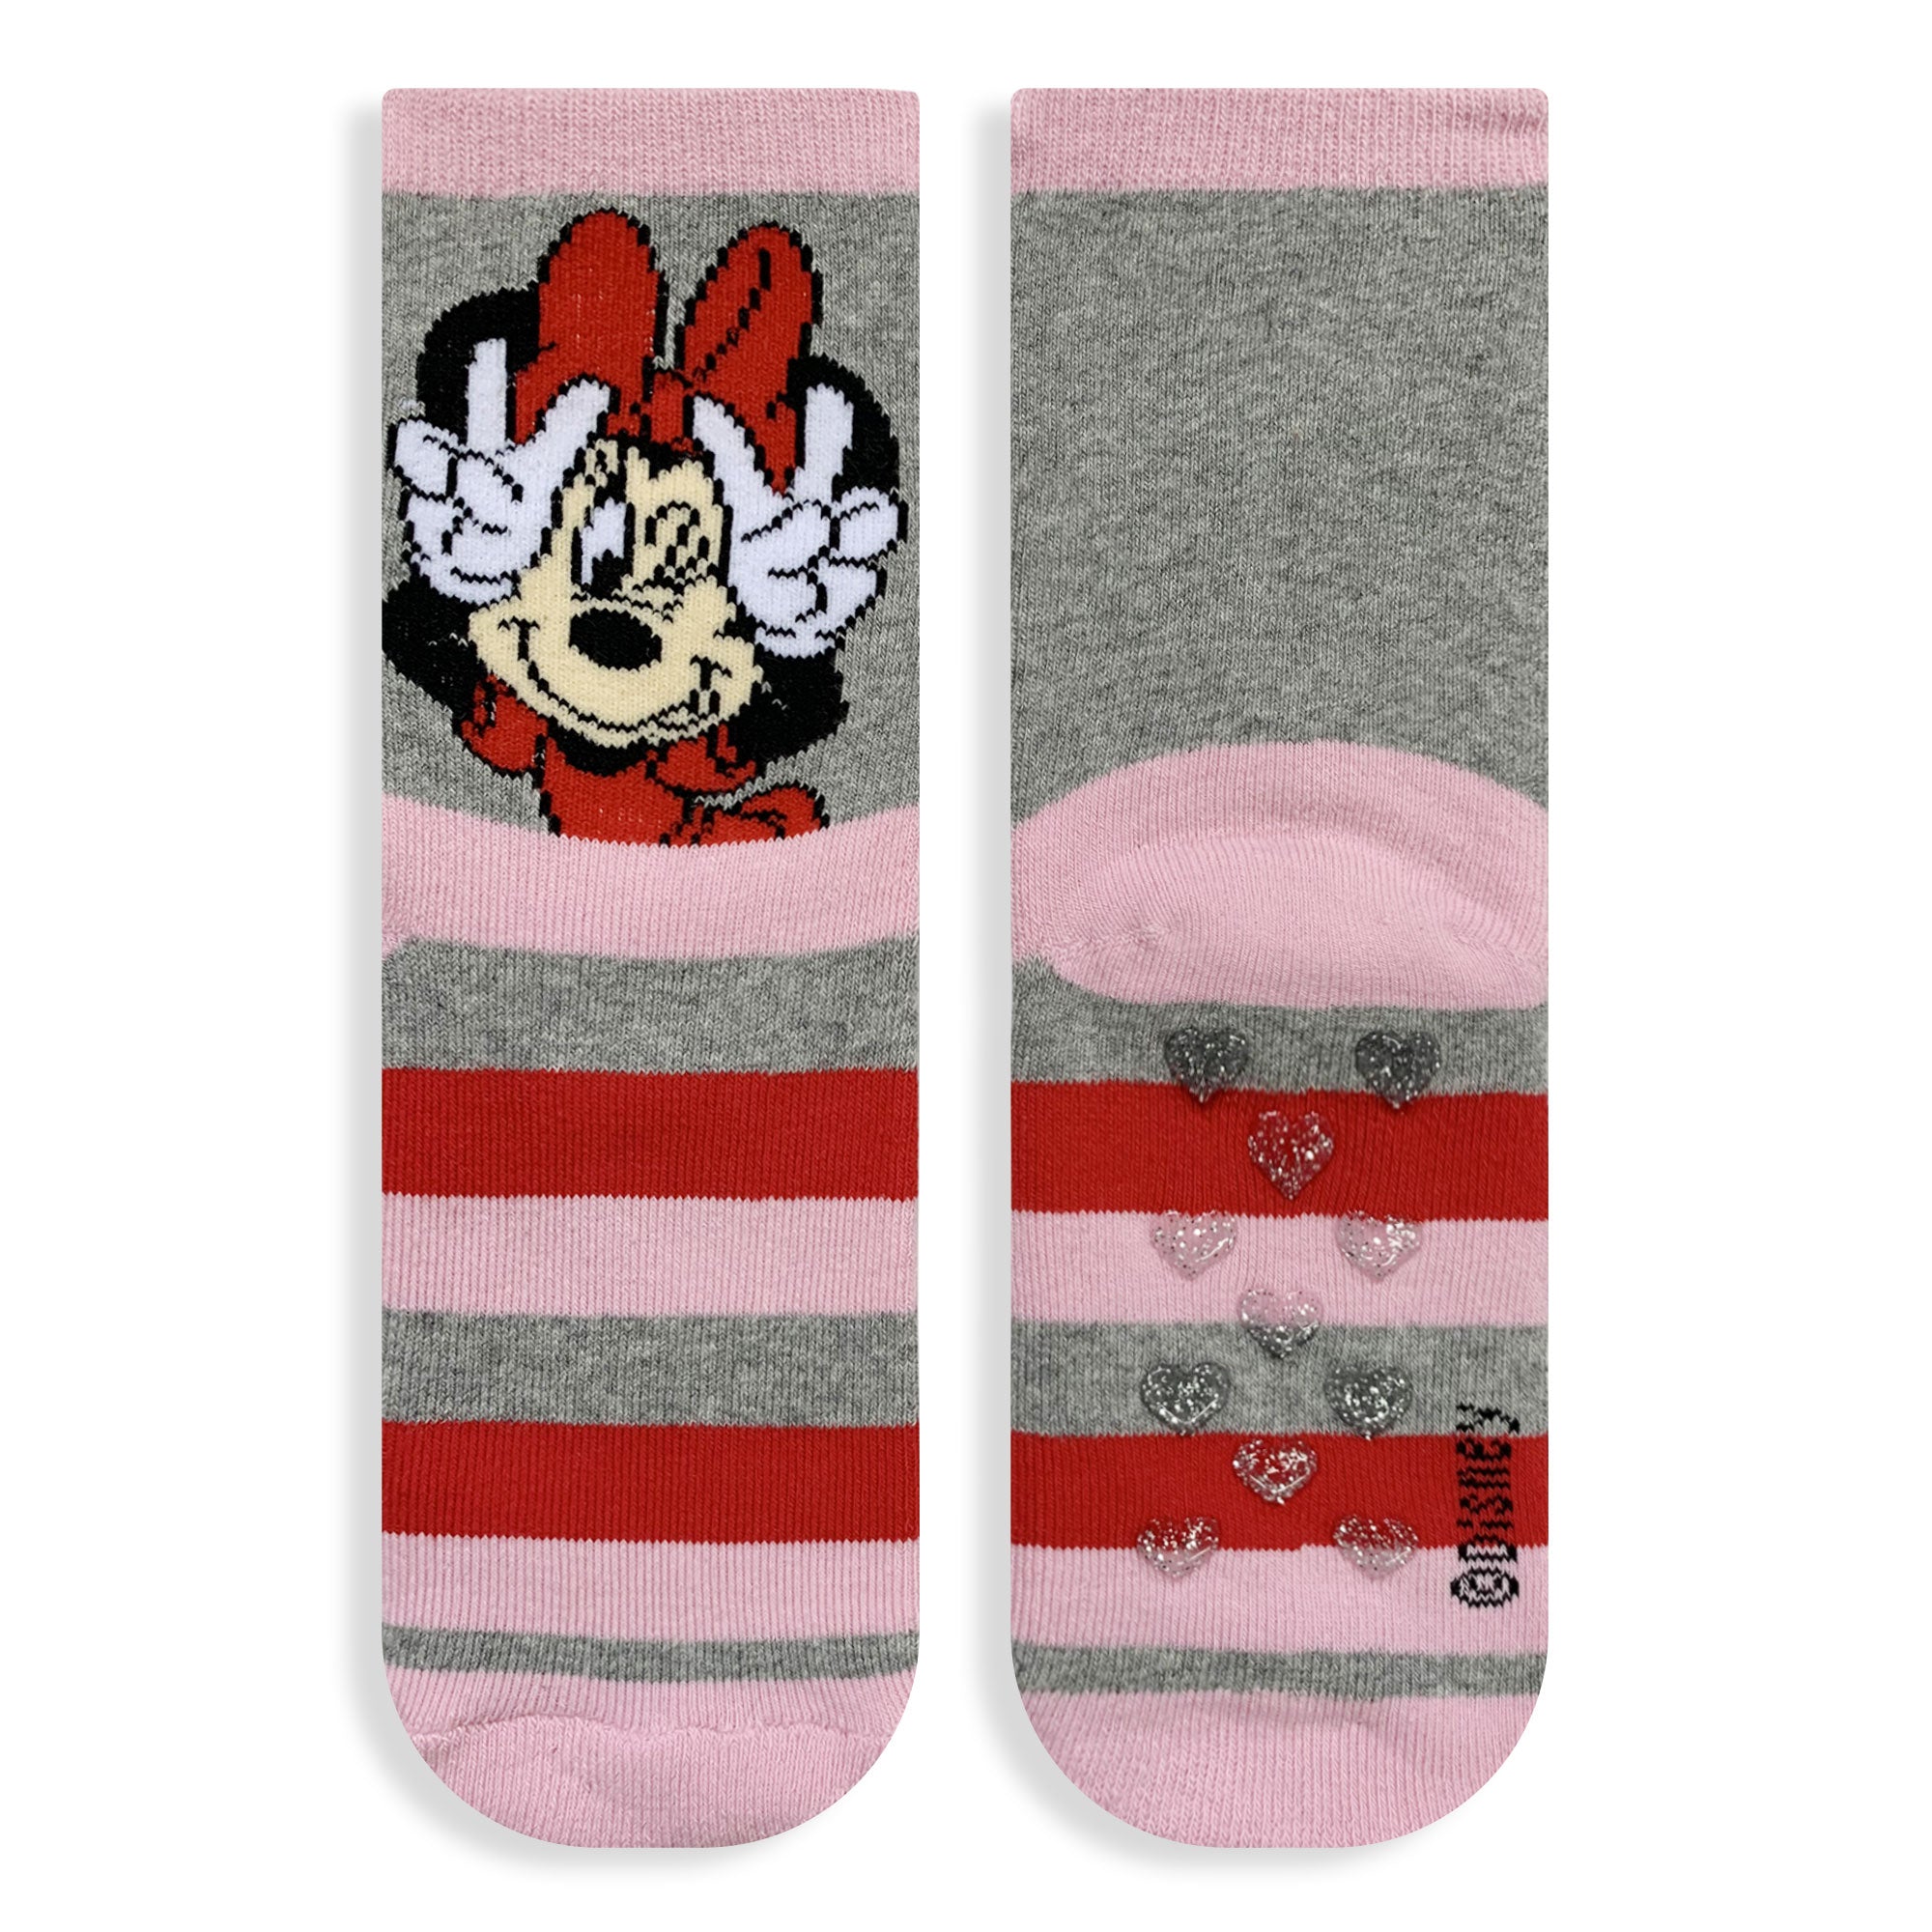 Calzini antiscivolo bambina Disney Minnie Mouse in spugna cotone invernale 6219